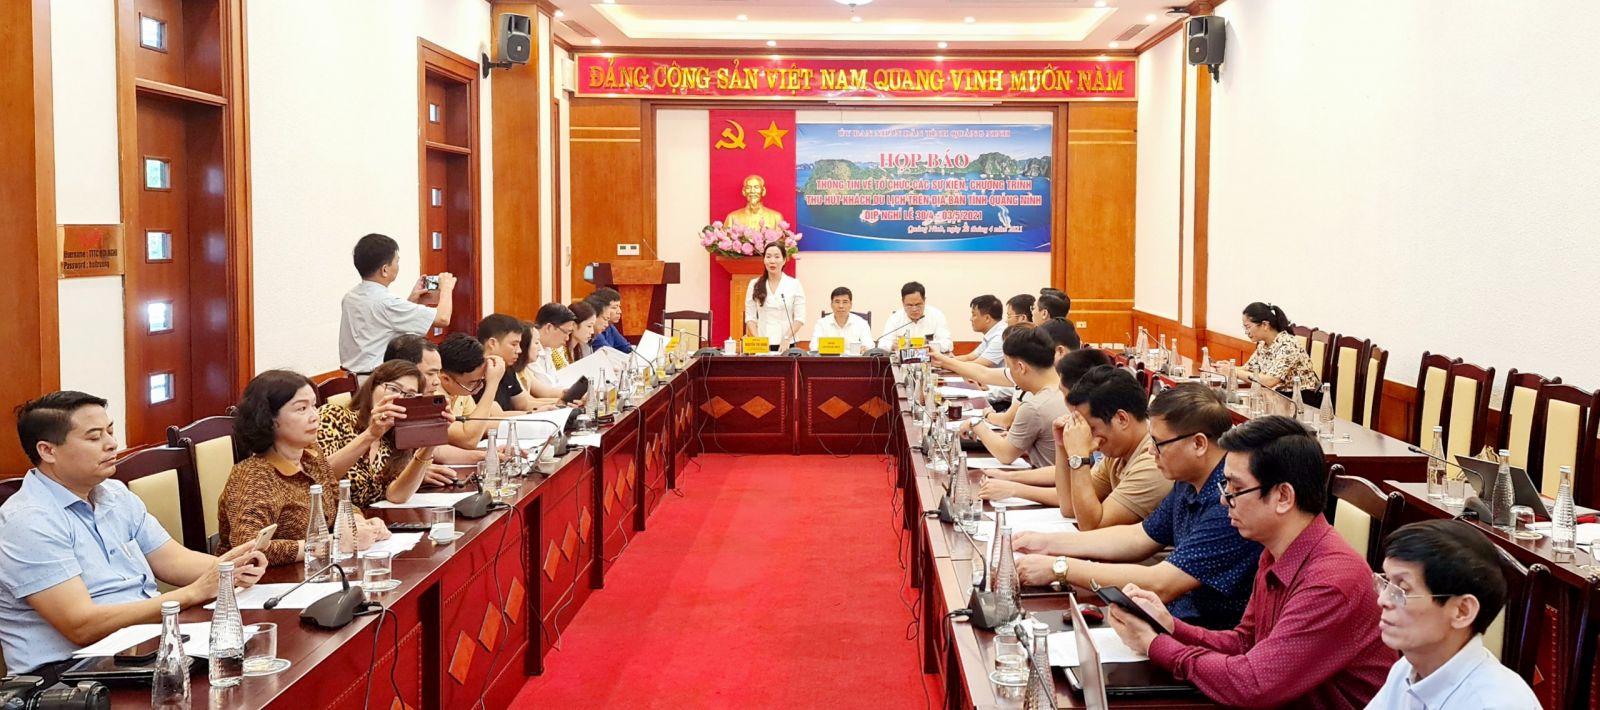 Toàn cảnh họp báo thông tin về các sự kiện chương trình thu hút khách du lịch trên địa bàn tỉnh Quảng Ninh.